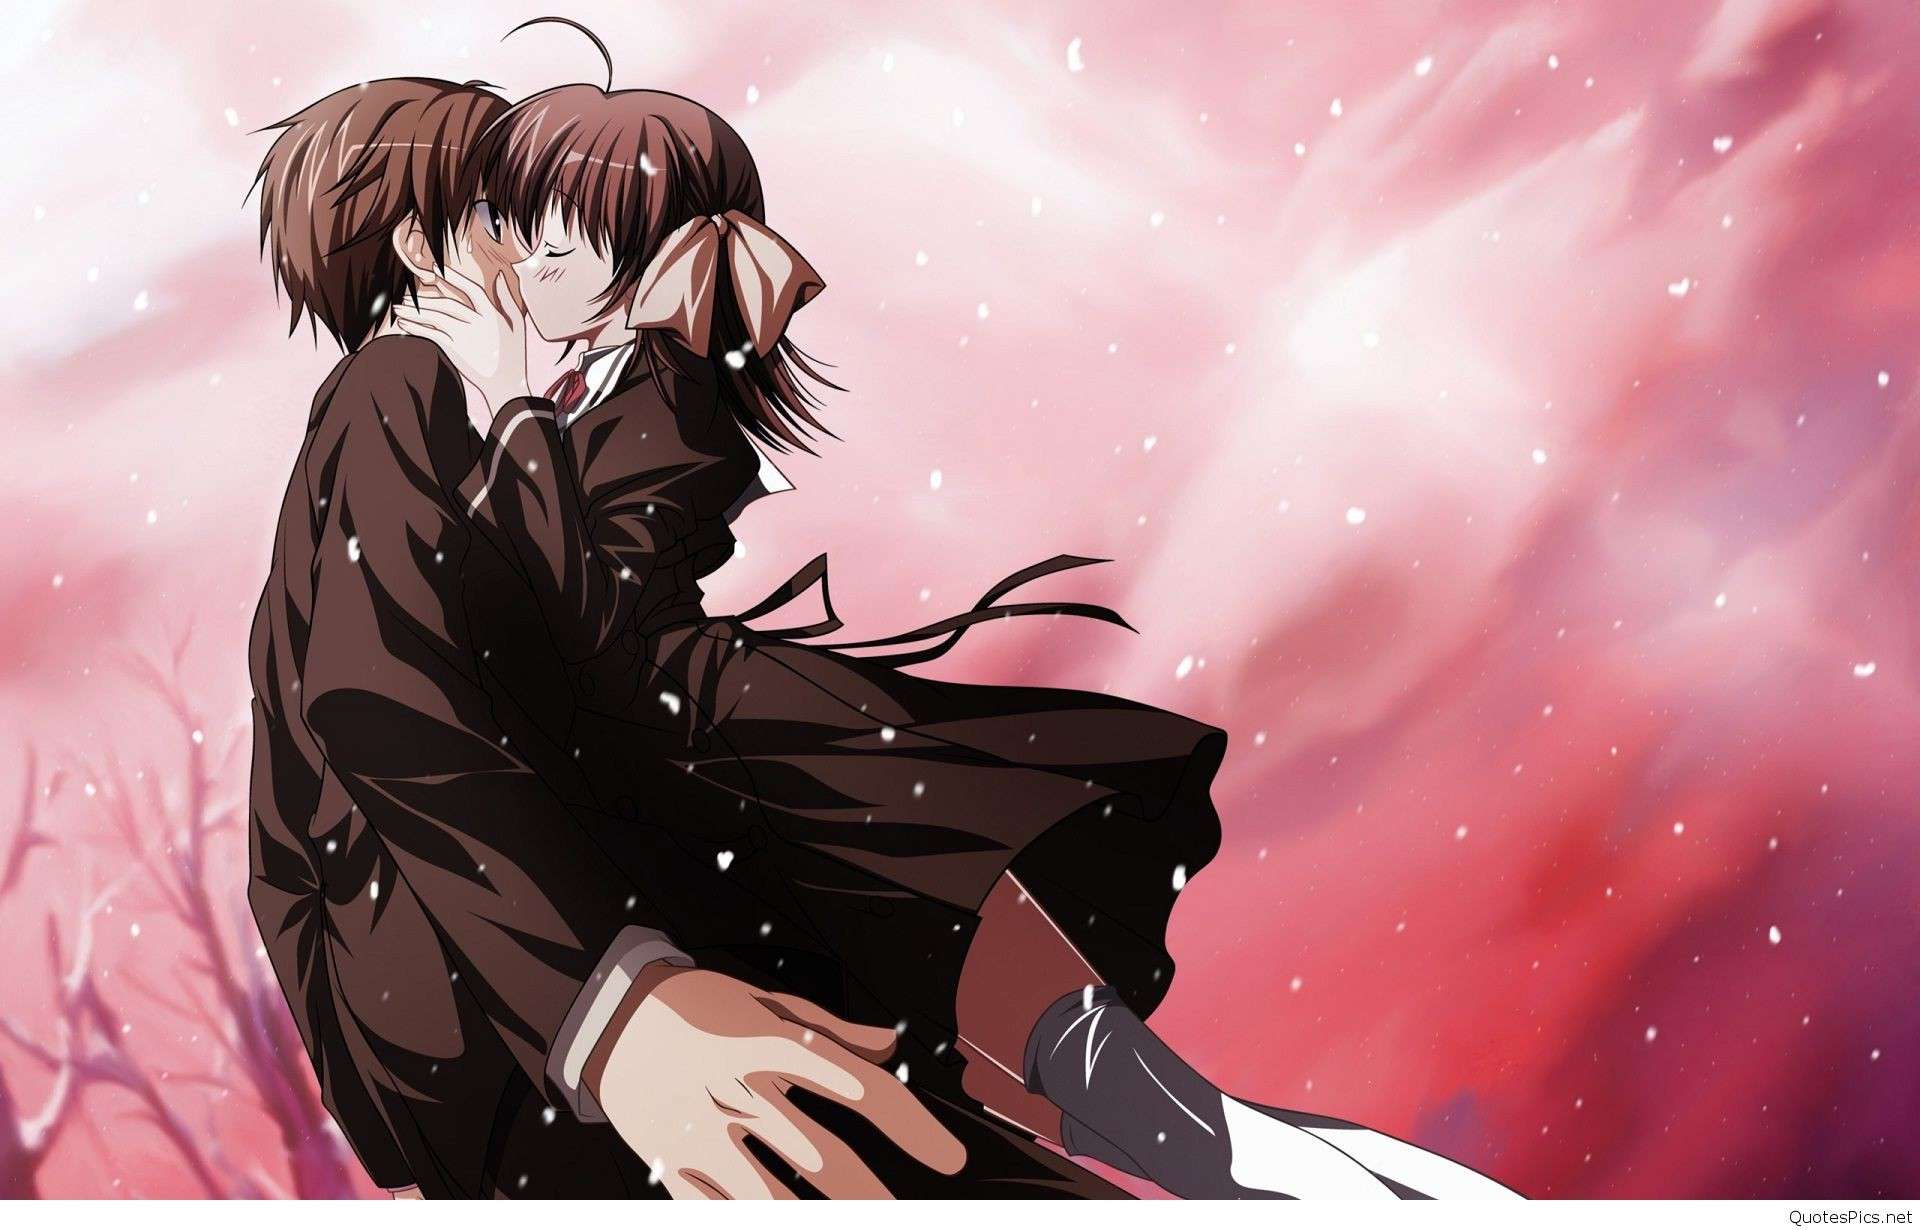 Matching Pfp | Anime pair dp romantic, Dark anime guys, Anime love couple